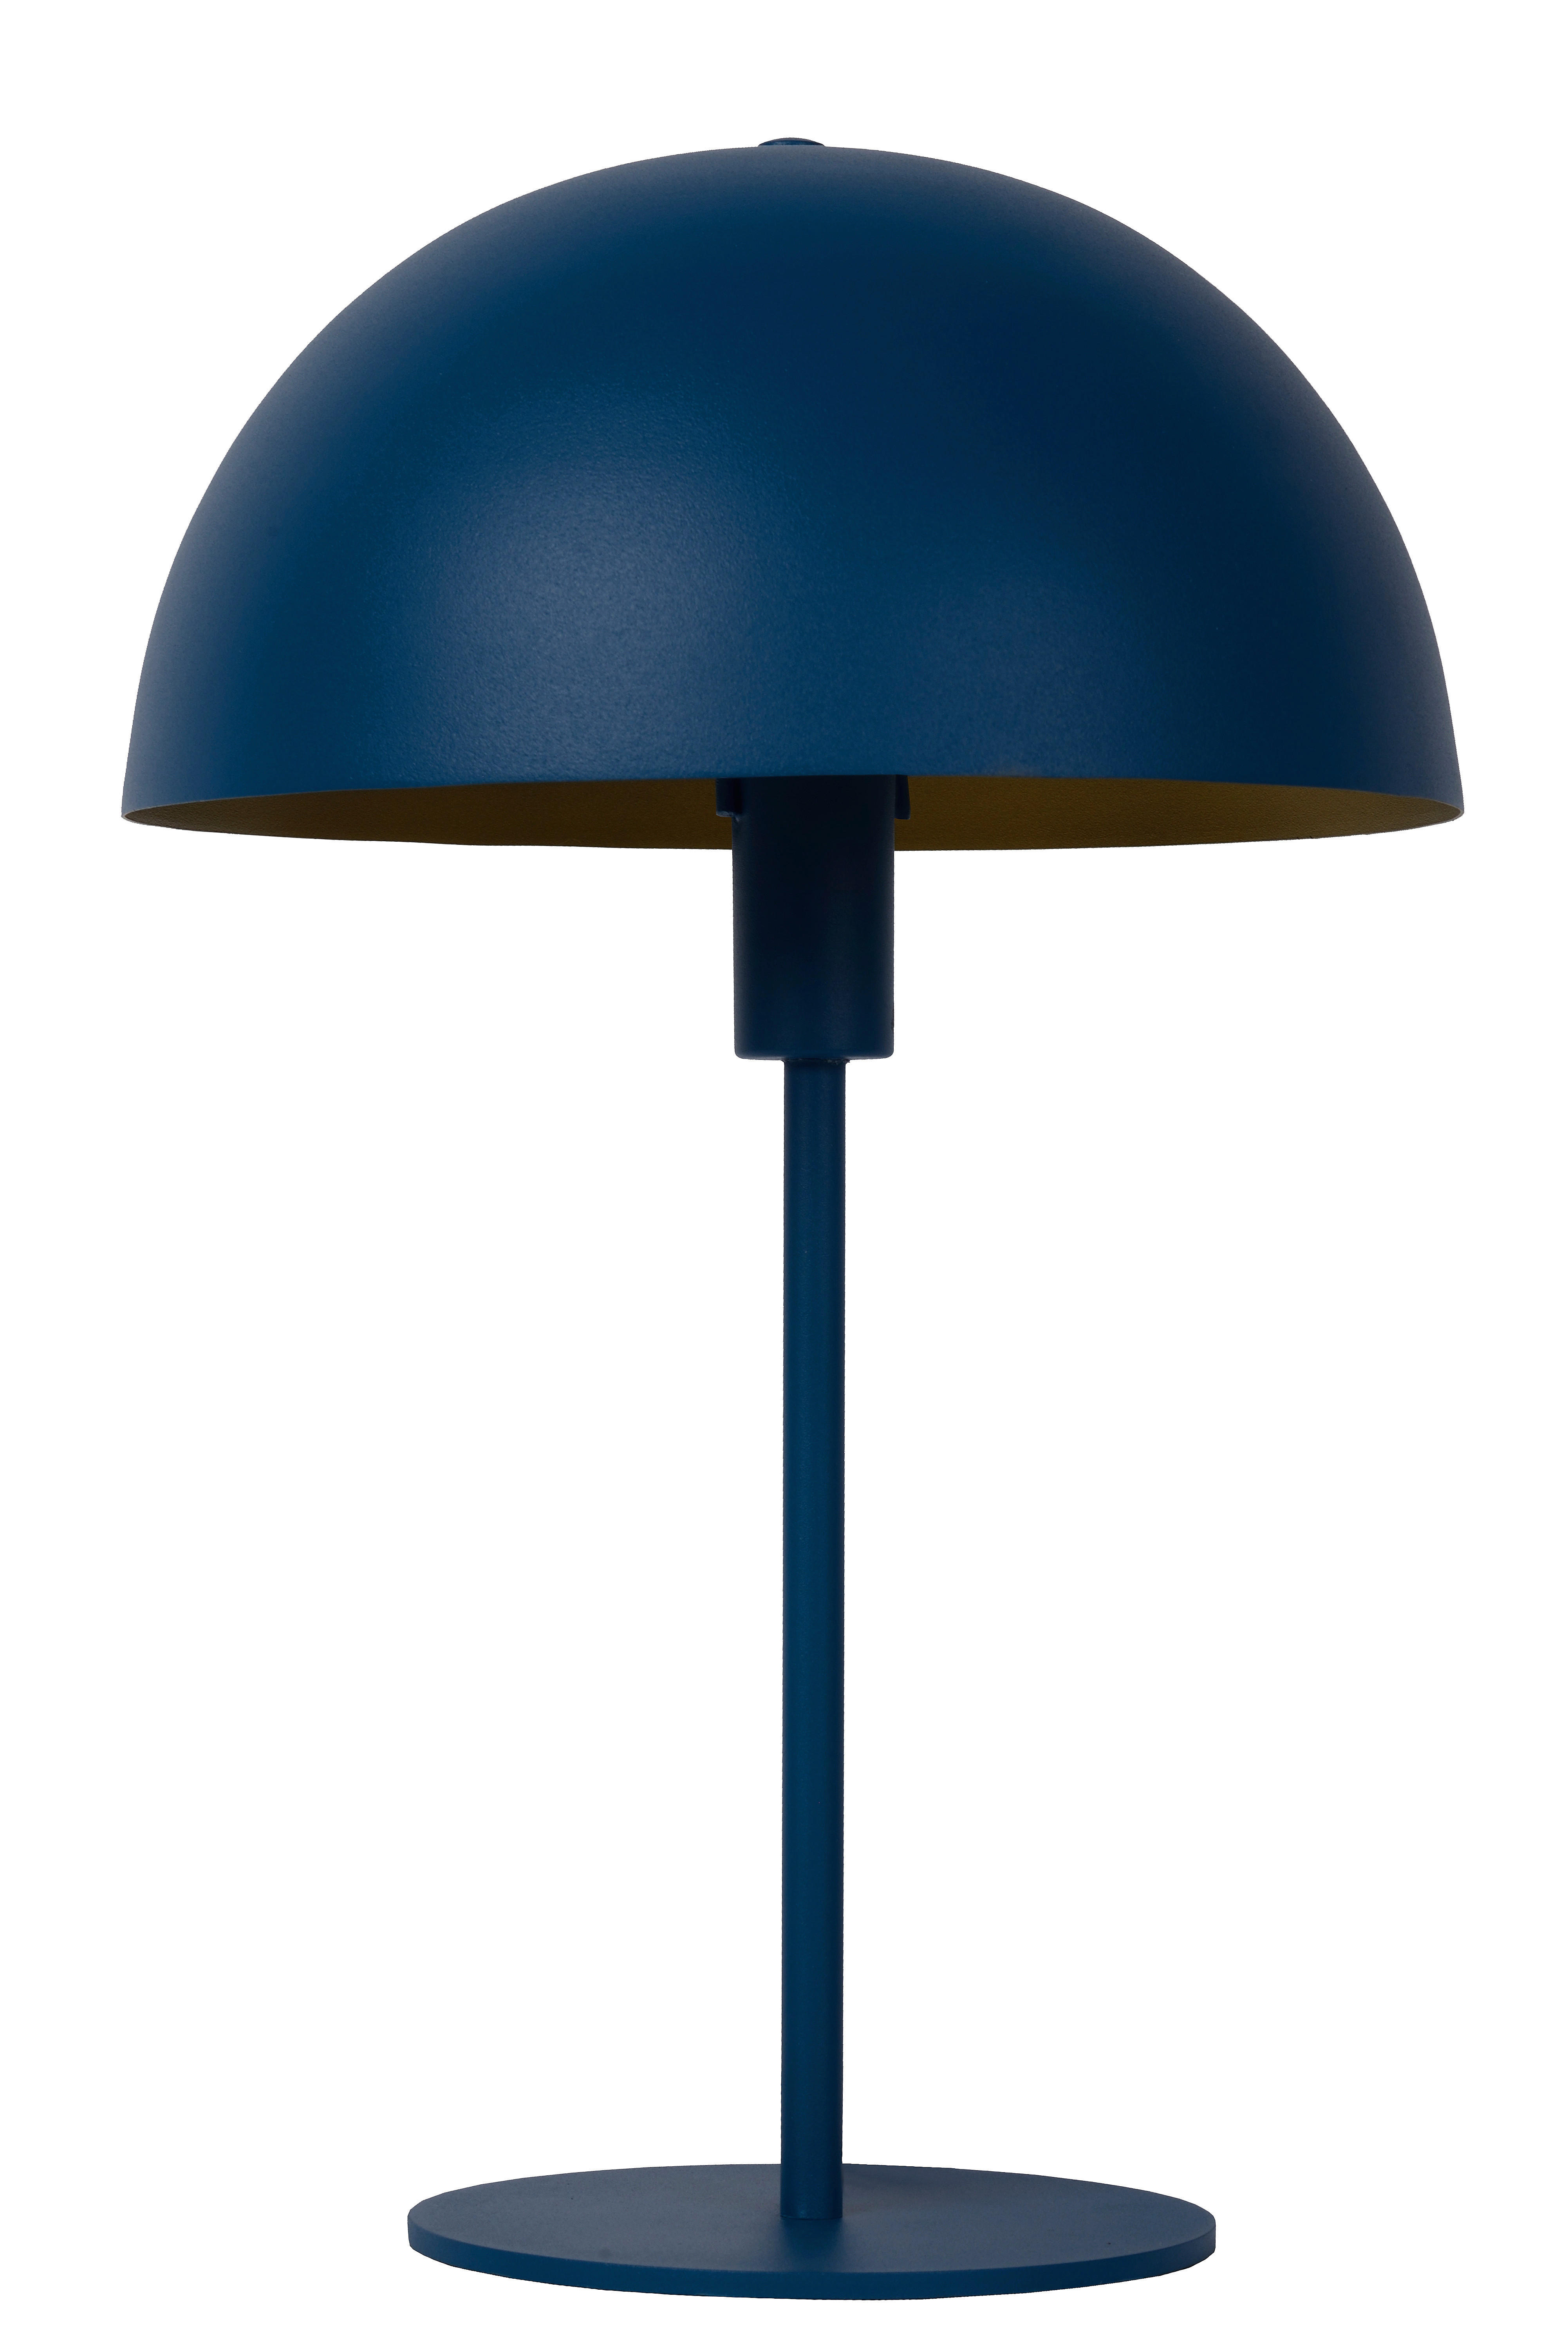 TISCHLEUCHTE 25/40 cm   - Blau/Messingfarben, Design, Metall (25/40cm) - Lucide